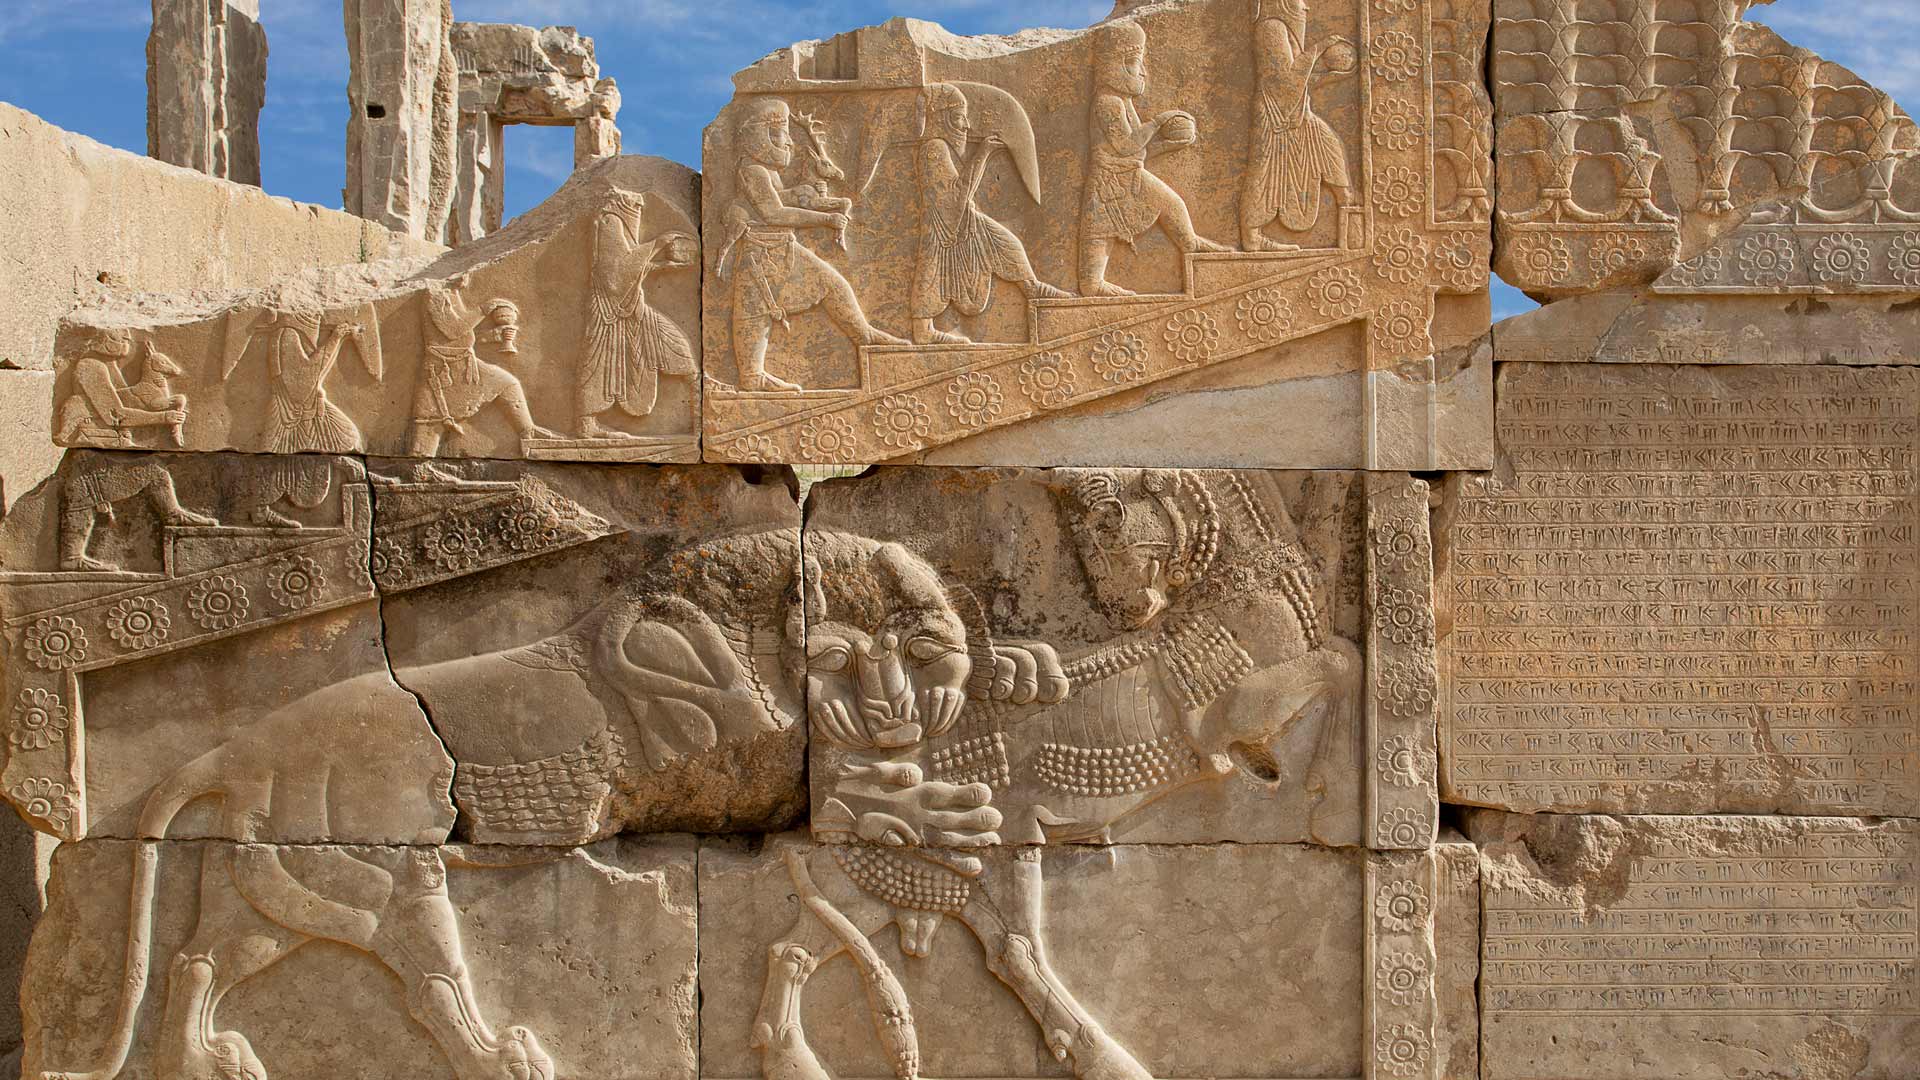 Grabados en la antigua ciudad persa de Persépolis, Irán